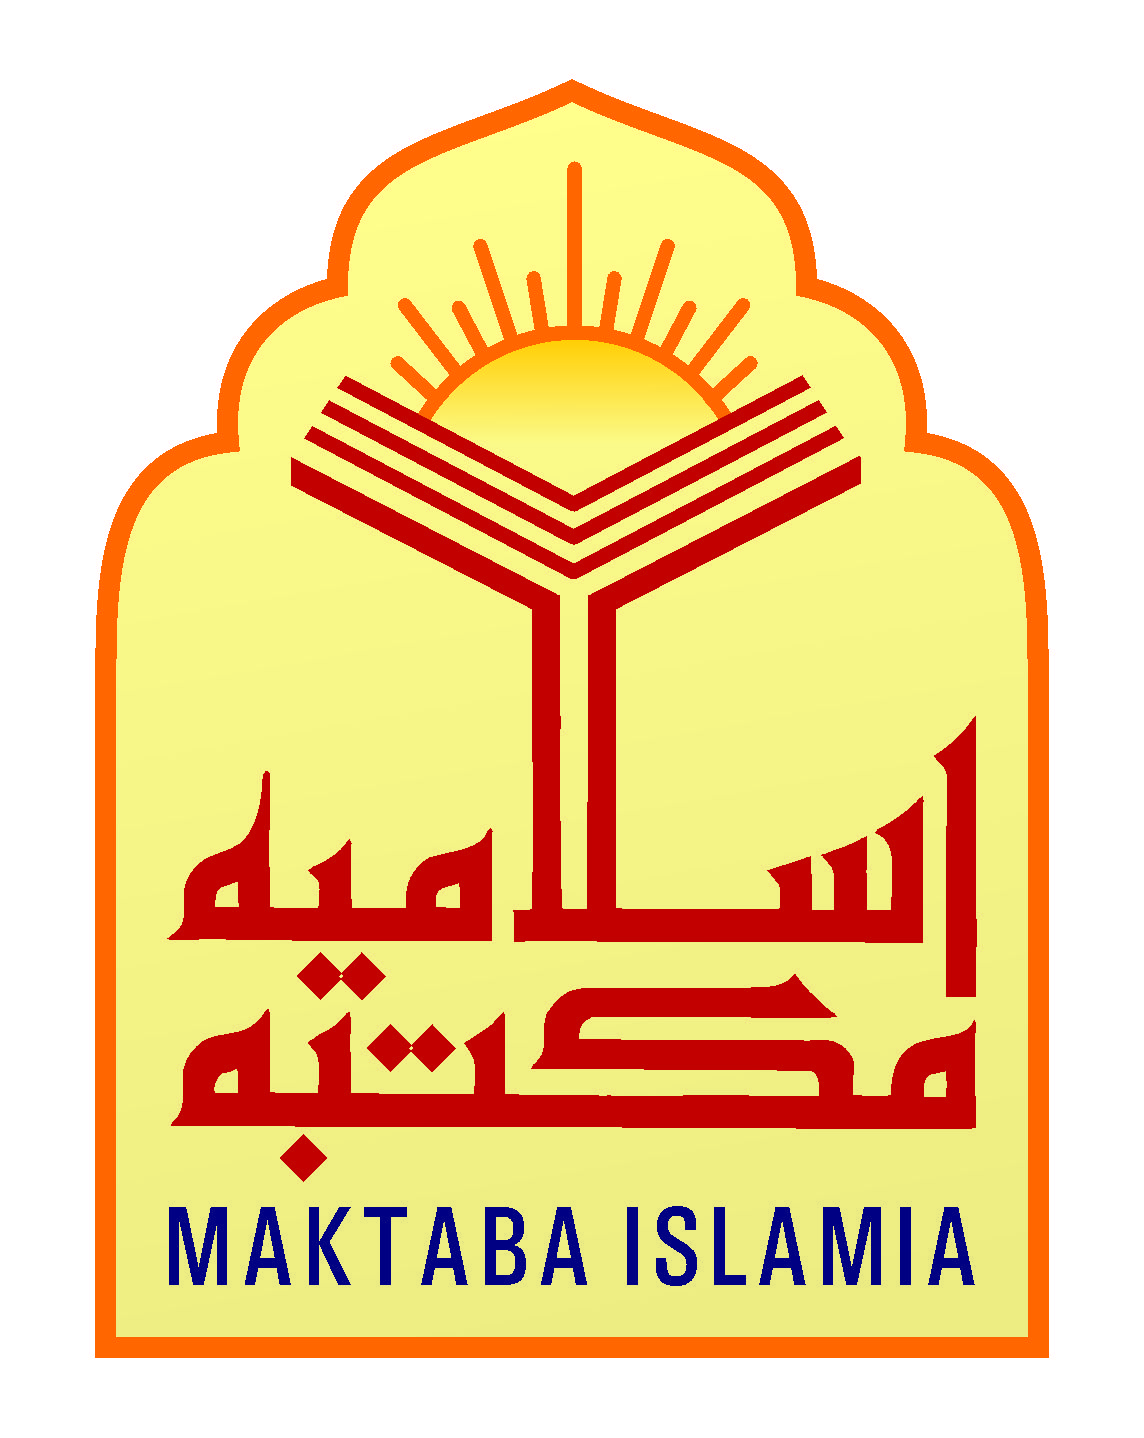 maktaba islamia books